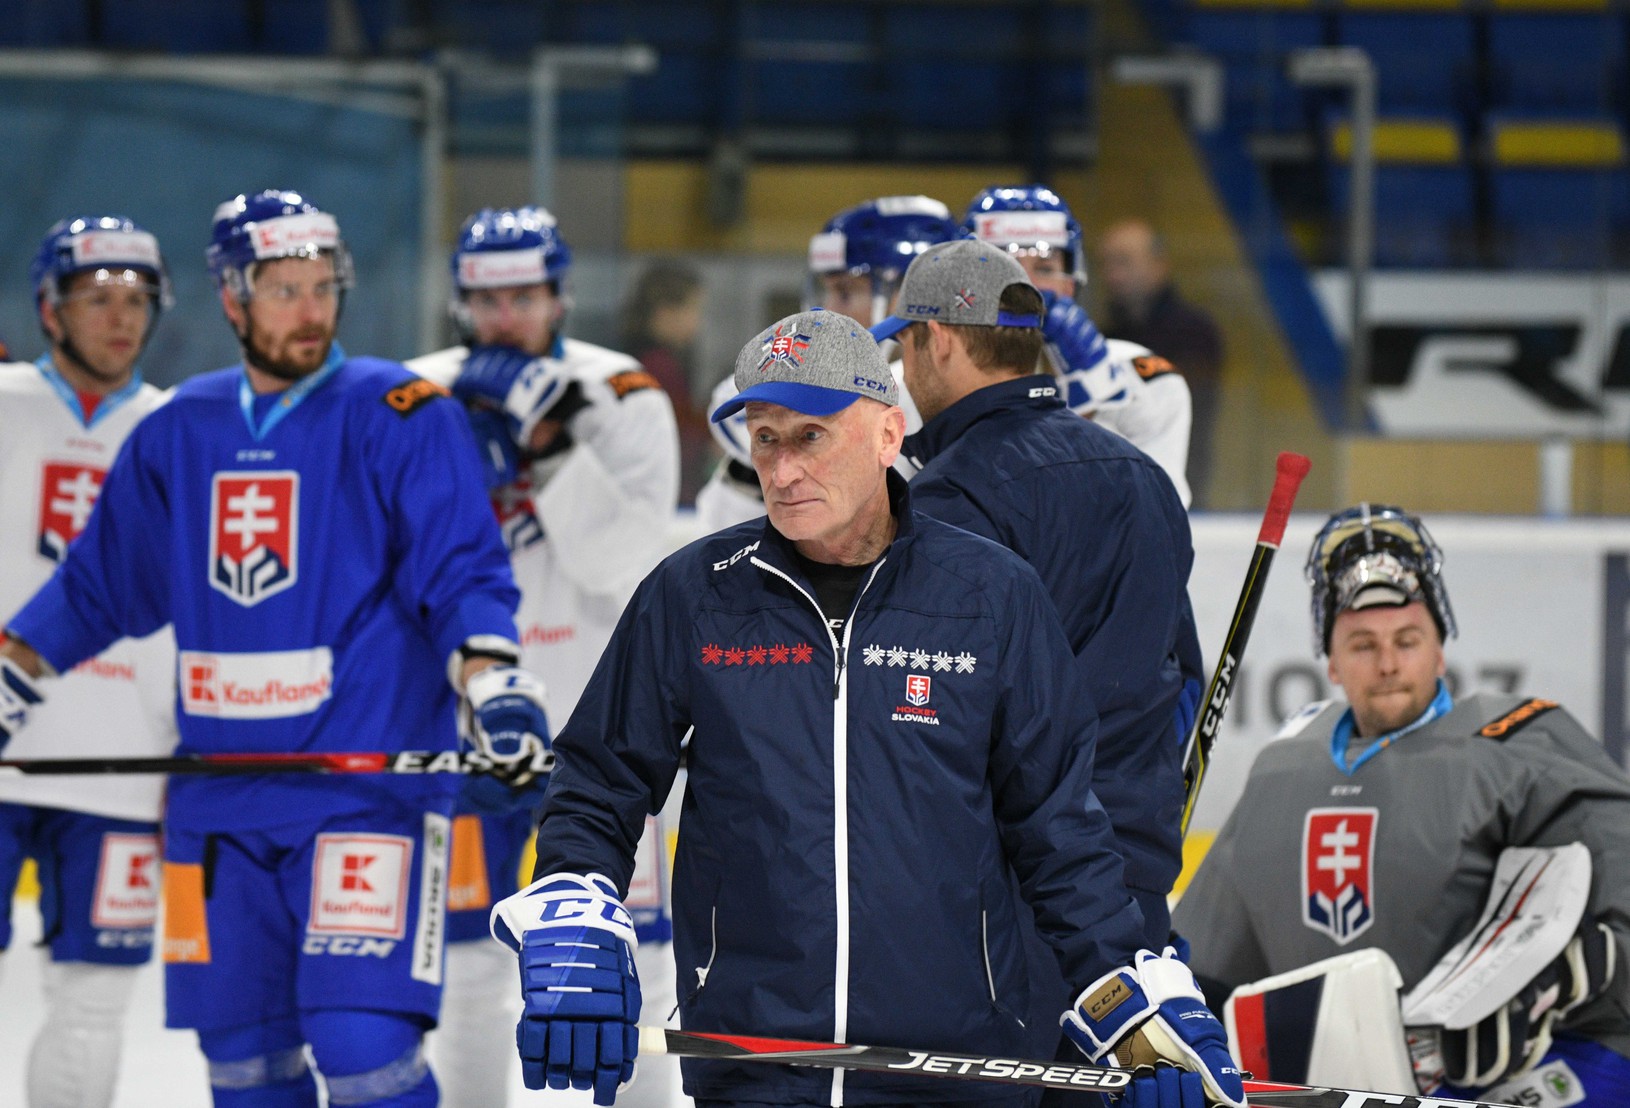 Tréner slovenskej hokejovej reprezentácie